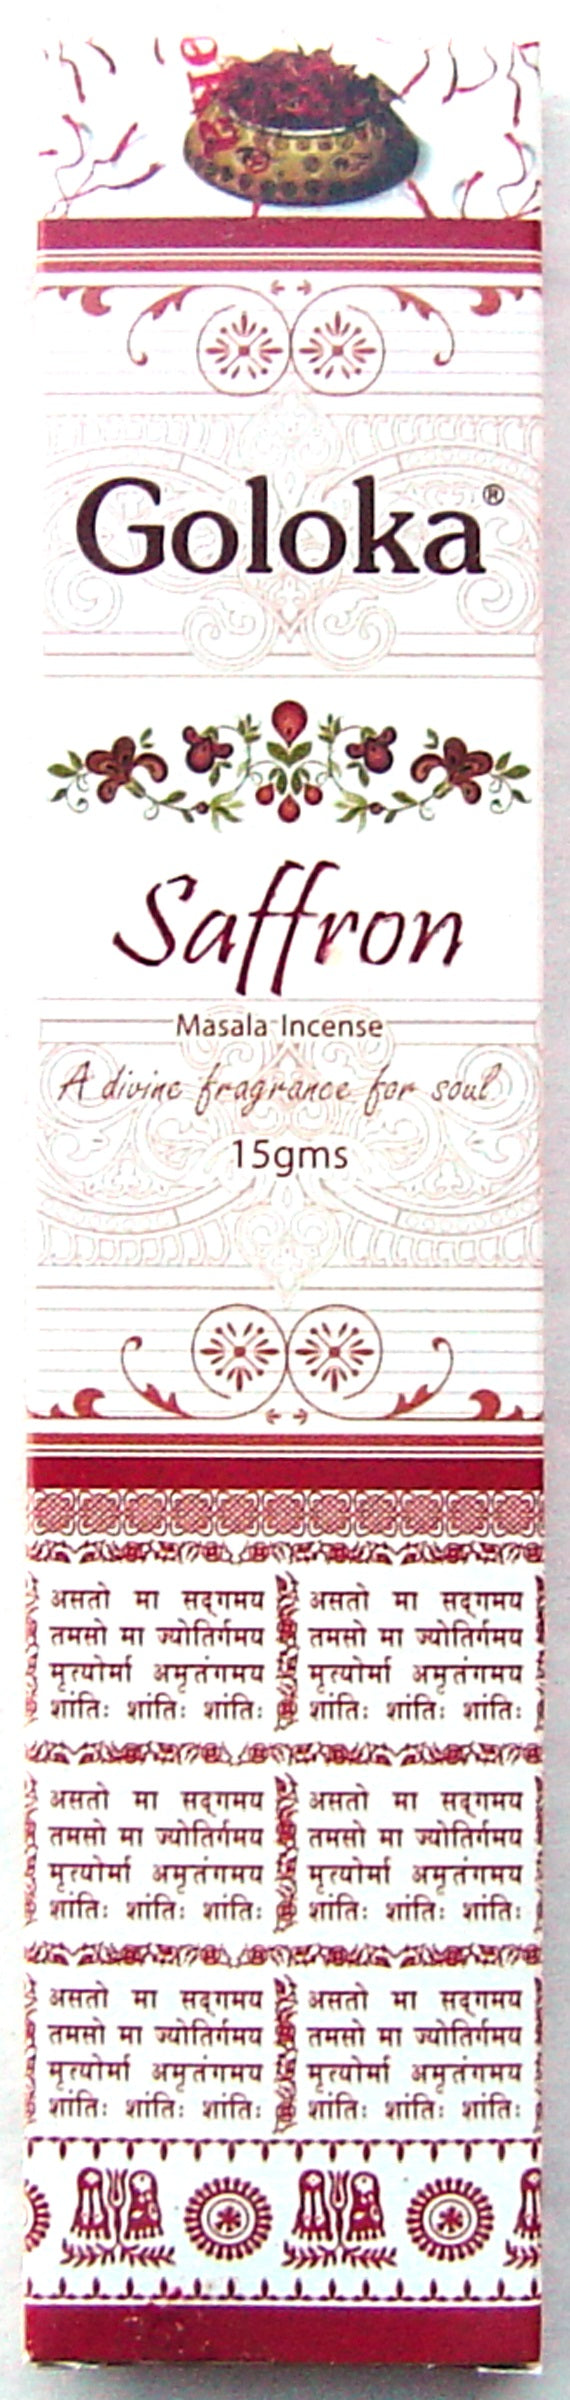 Goloka Masala - Saffron